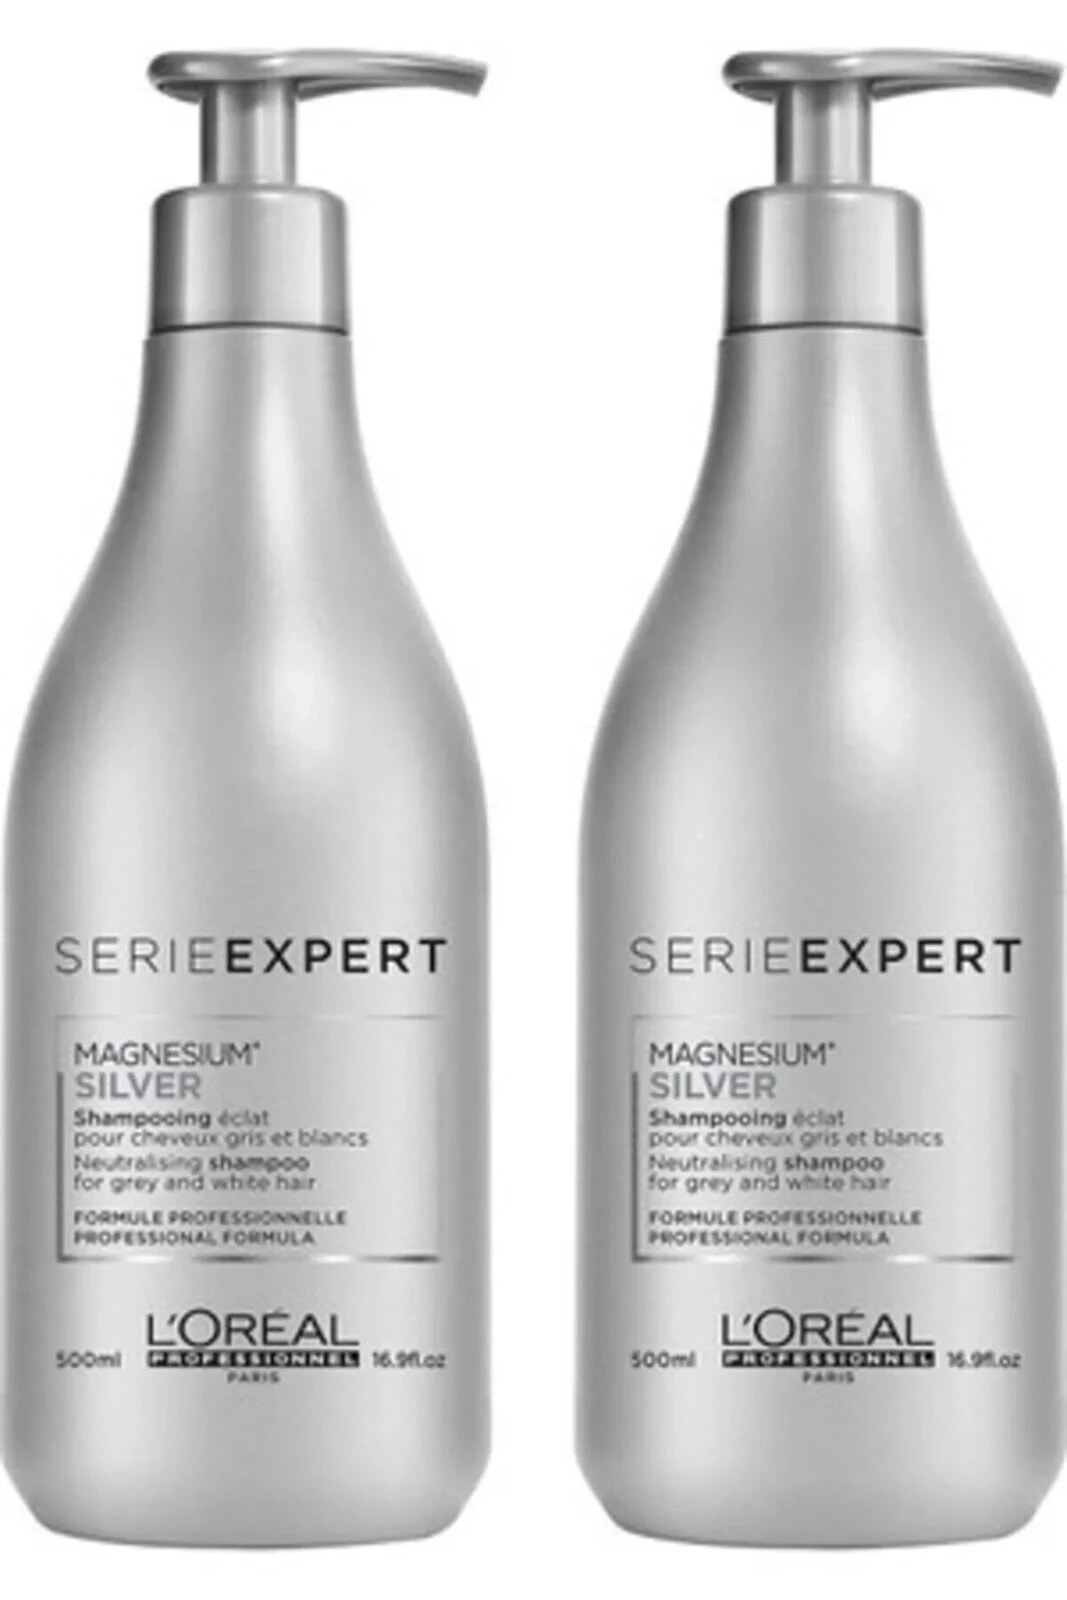 Gri Ve Beyaz Saçlar Için Parlaklık Veren Gri Şampuan 500 Ml X 2